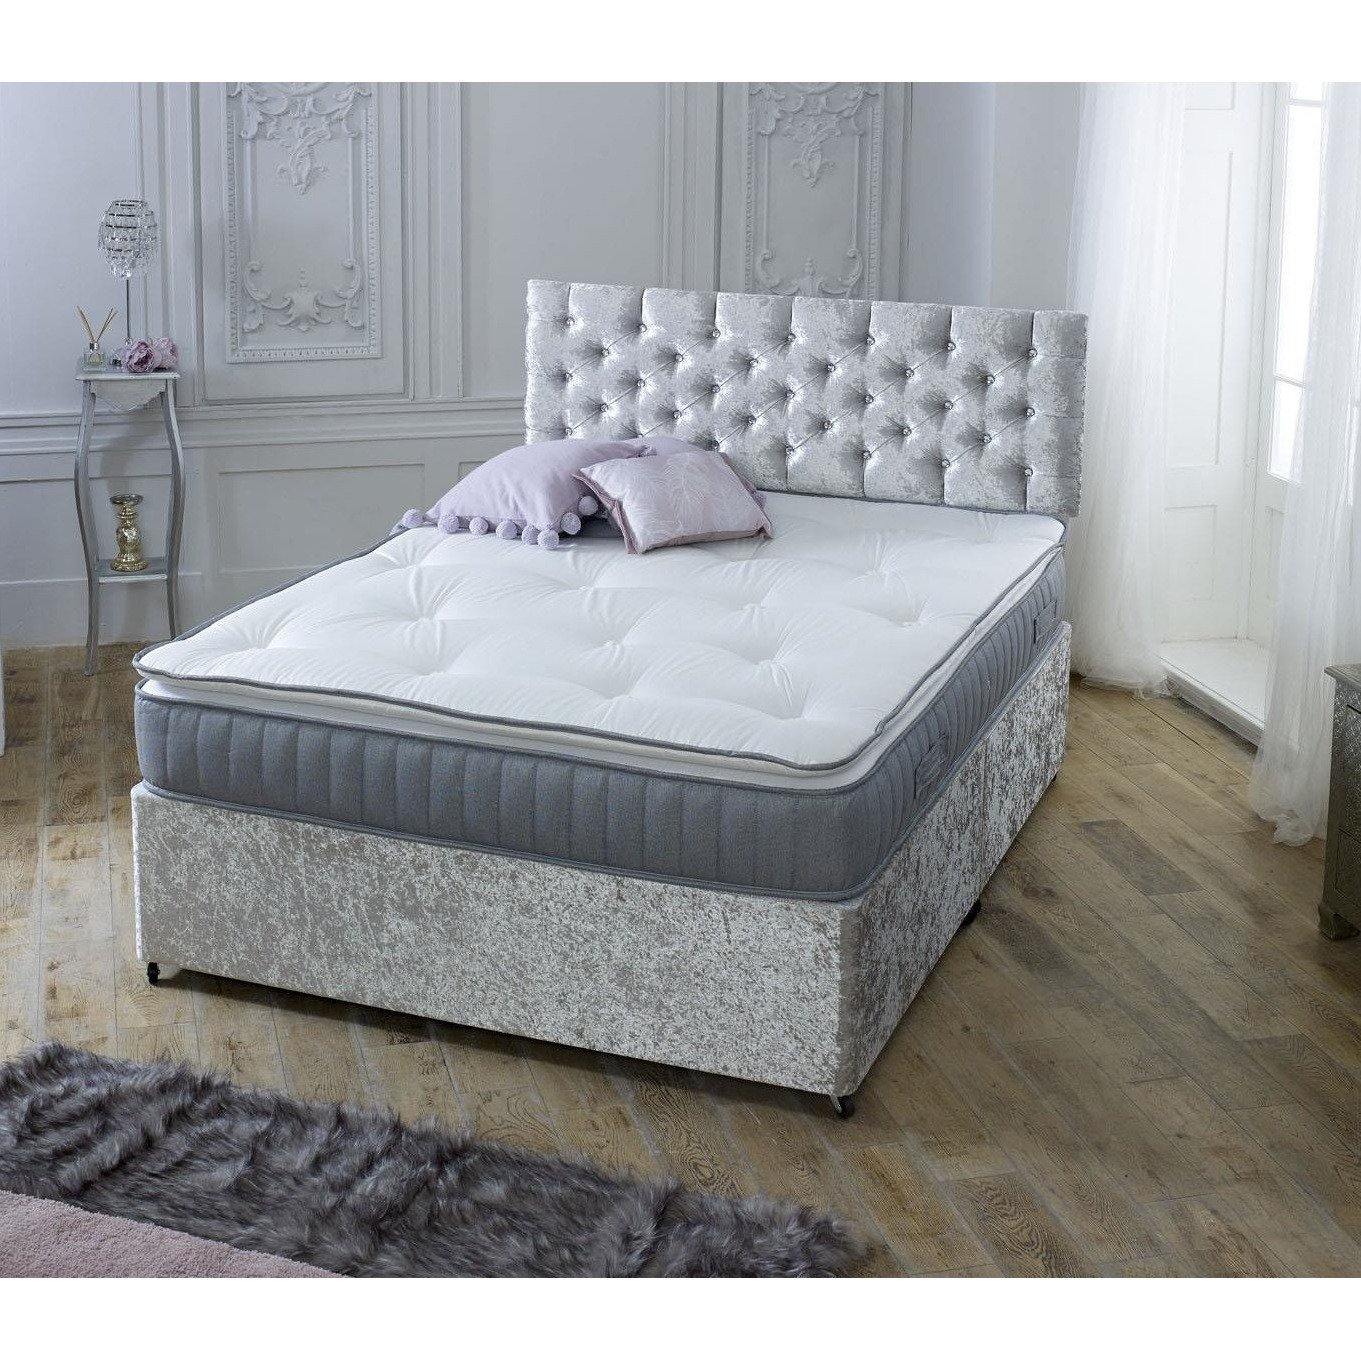 Starlight Beds™ | Pillow Top Sprung Mattress